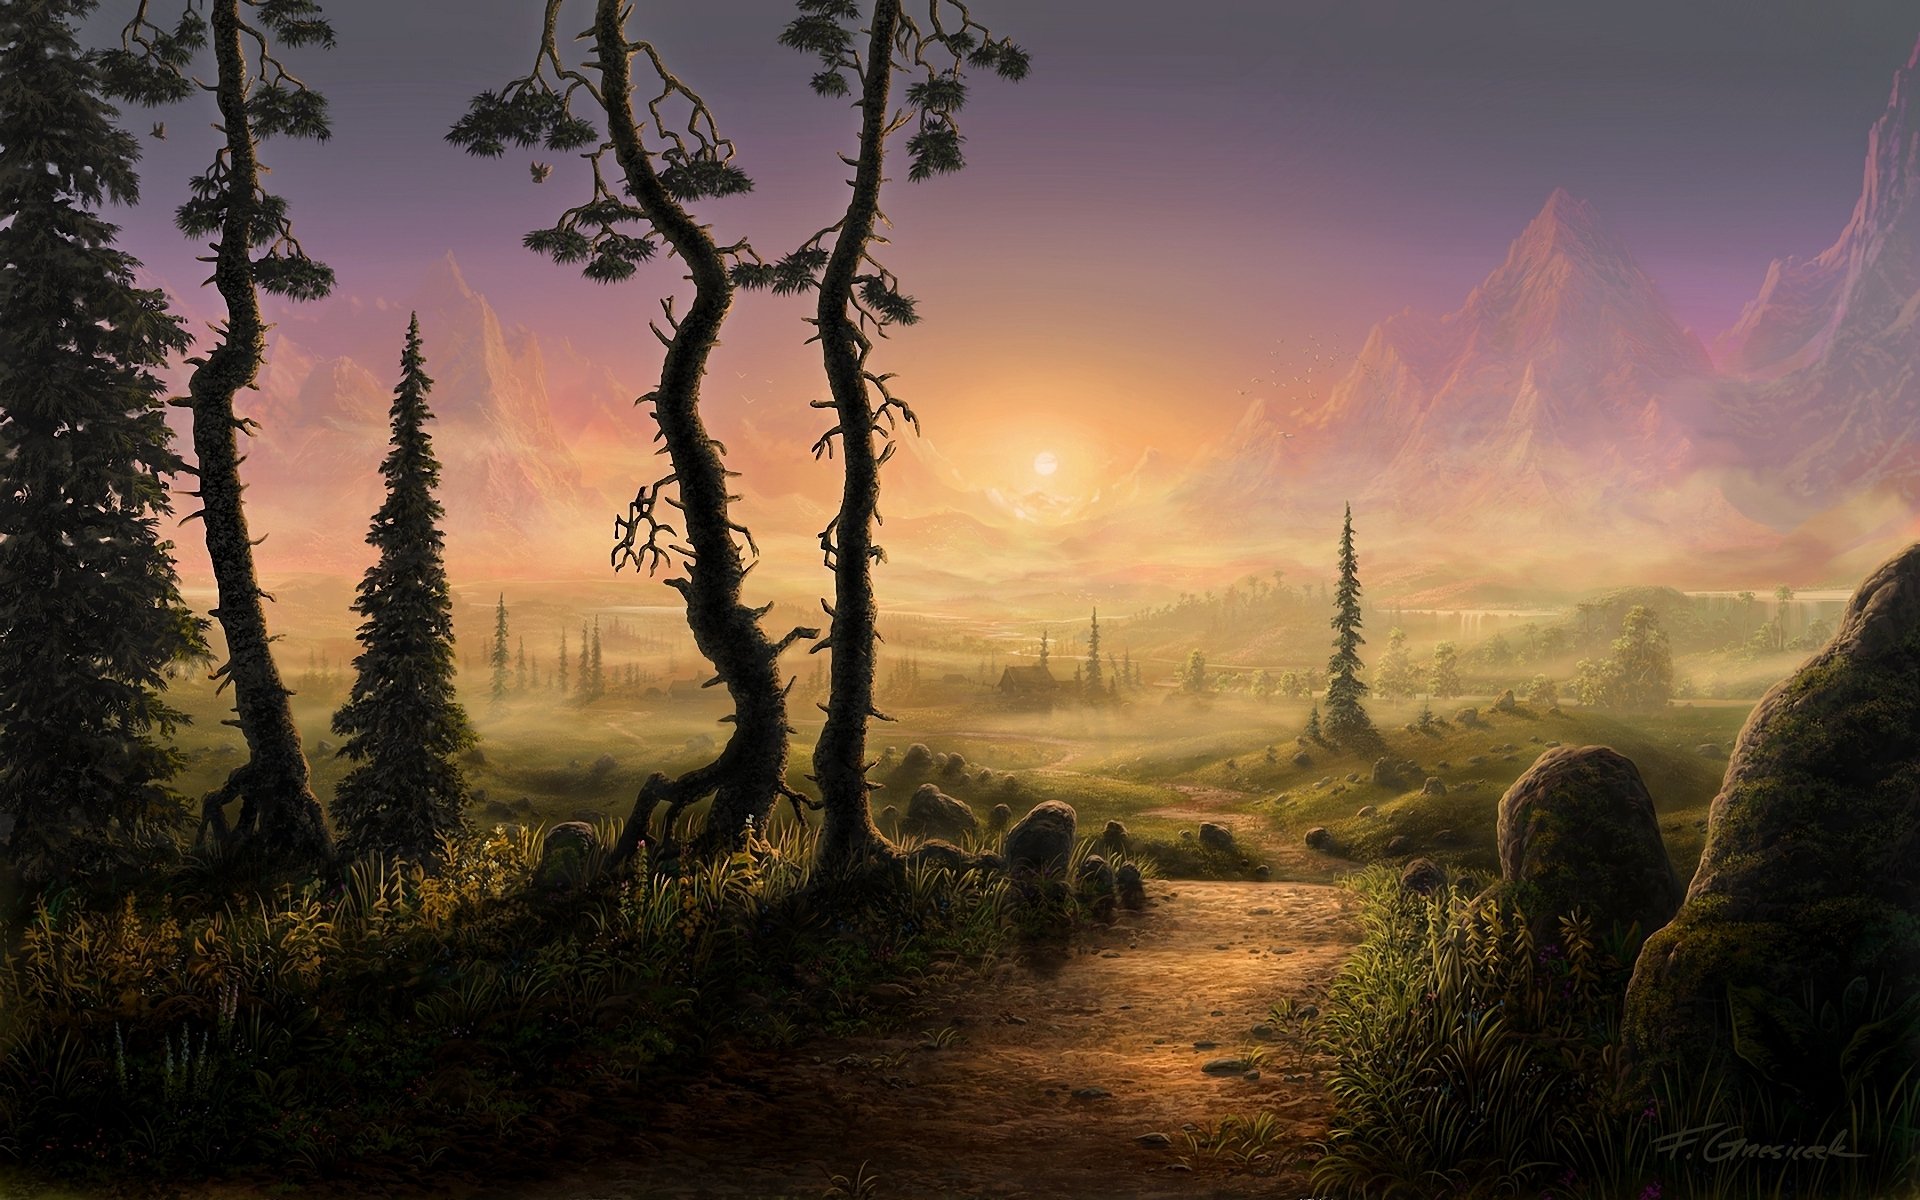 sztuka zbezczeszczone-x krajobraz drzewa góry droga ścieżka ścieżka słońce poranek kamienie świerk domek mgła